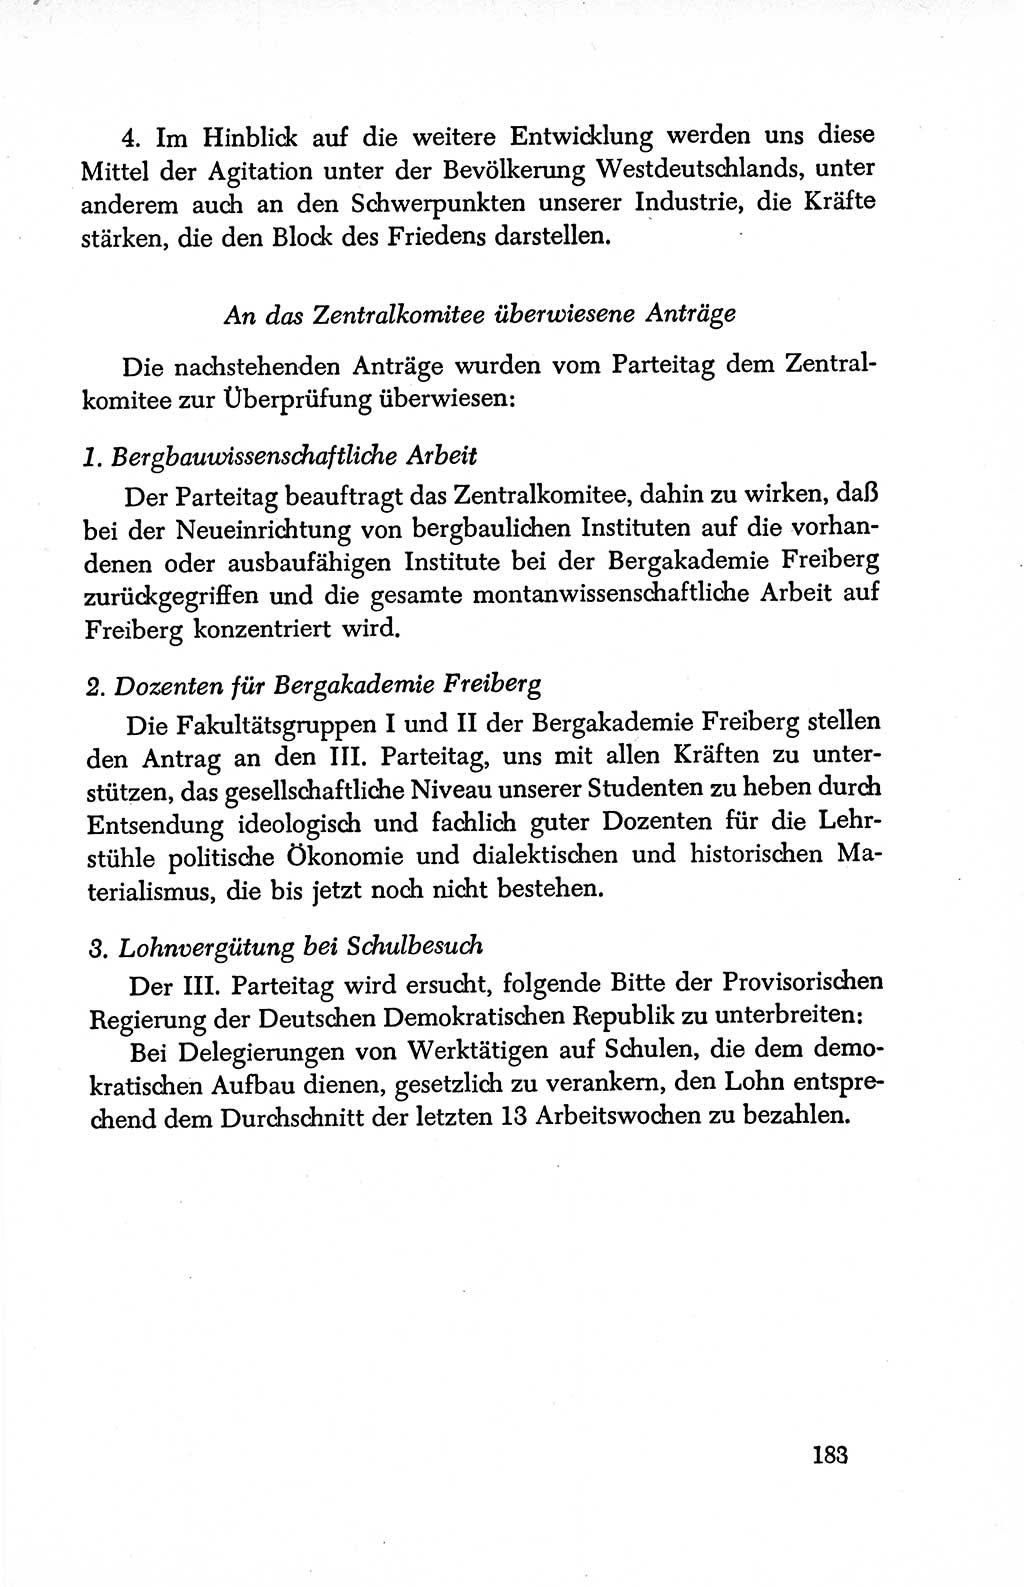 Dokumente der Sozialistischen Einheitspartei Deutschlands (SED) [Deutsche Demokratische Republik (DDR)] 1950-1952, Seite 183 (Dok. SED DDR 1950-1952, S. 183)